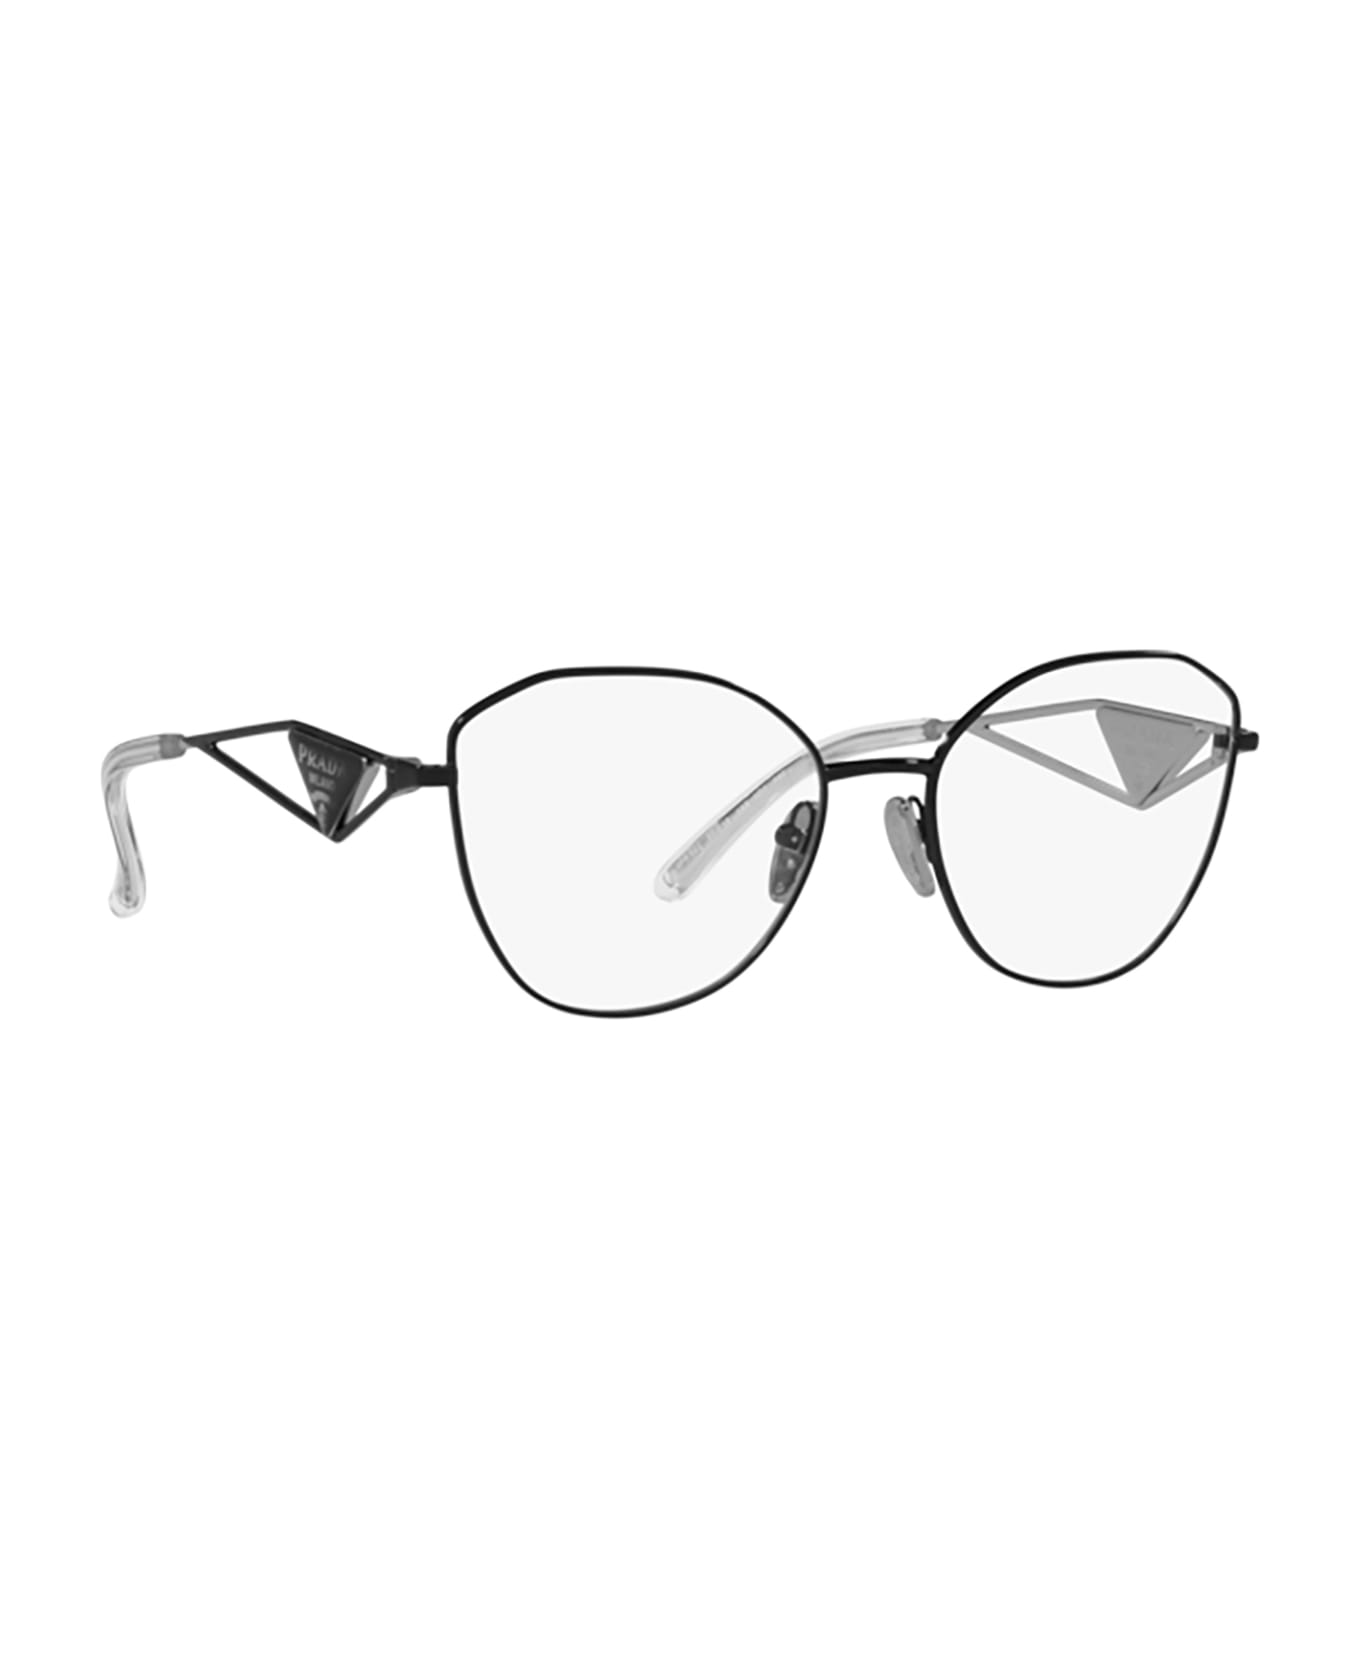 Prada Eyewear Pr 52zv Black Glasses - Black アイウェア